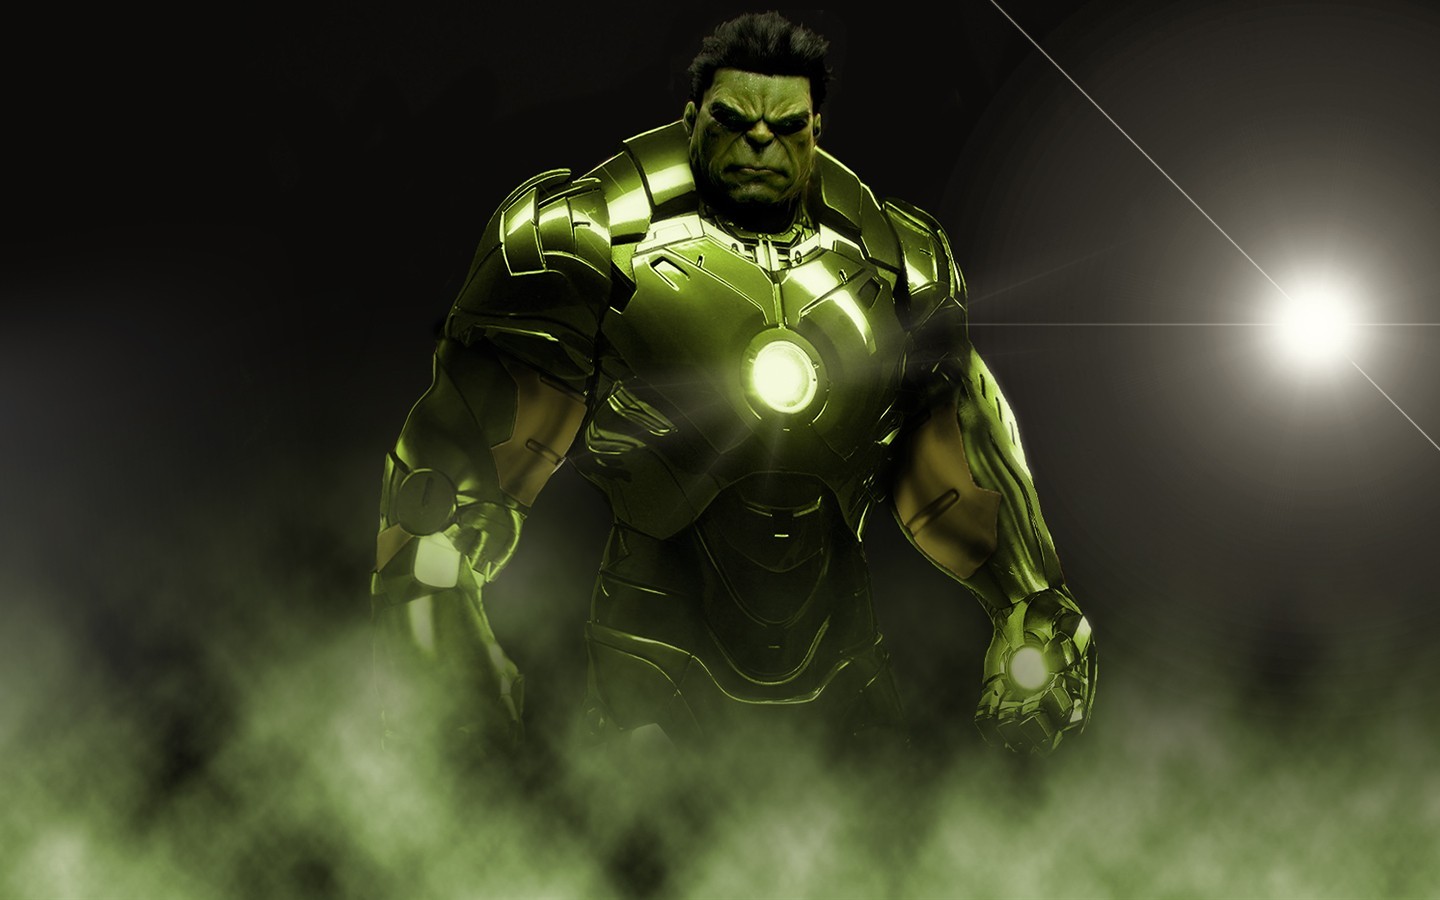 General 1440x900 Hulk crossover Marvel Comics green skin digital art armor